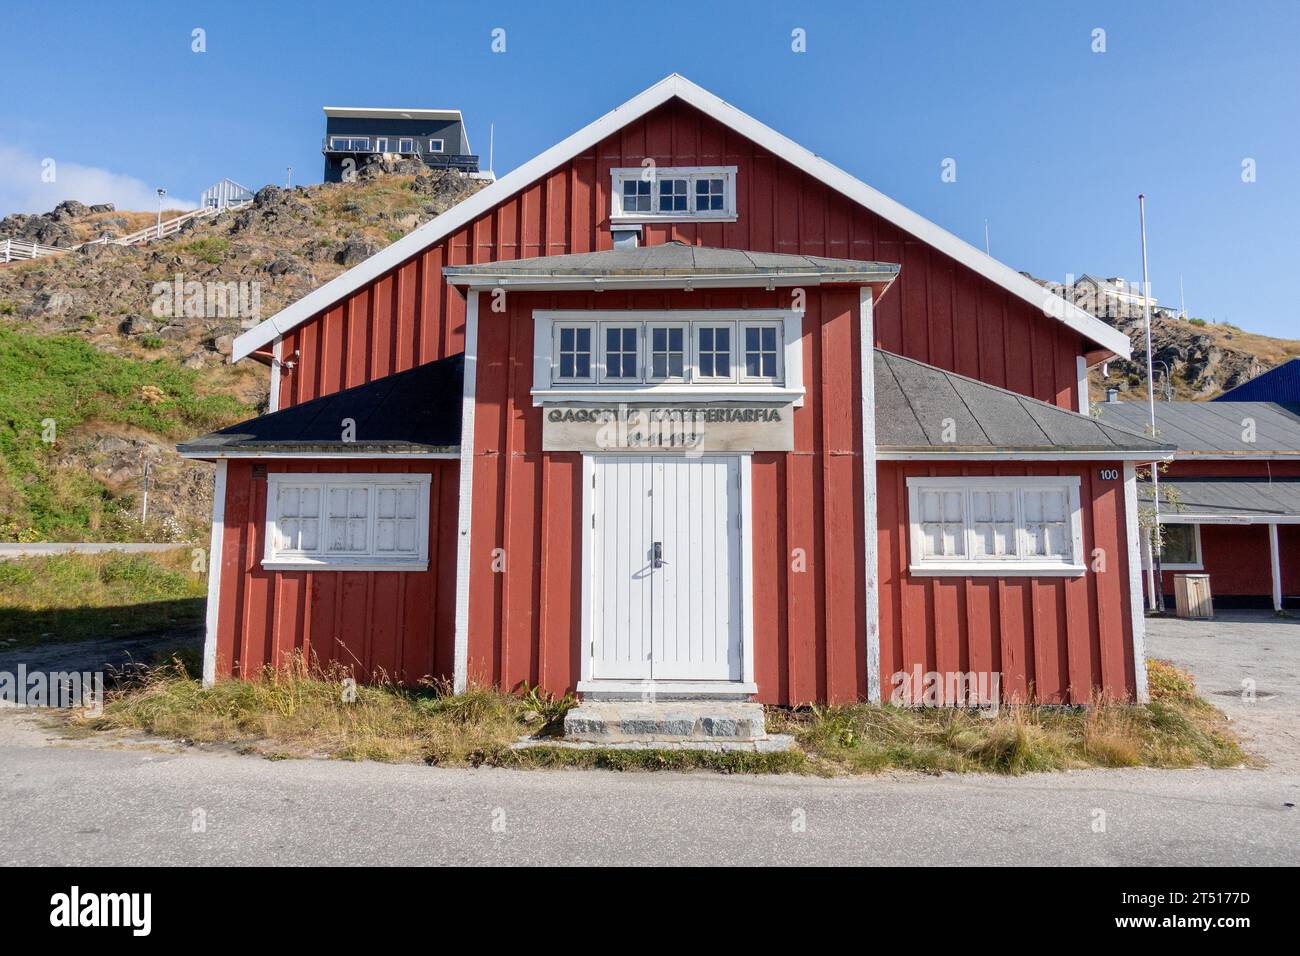 Qaqortoq Village Hall Qaqortoq, Groenlandia meridionale (Qaqortup Katersertarfia) costruita nel 1937 edificio rosso esterno Foto Stock